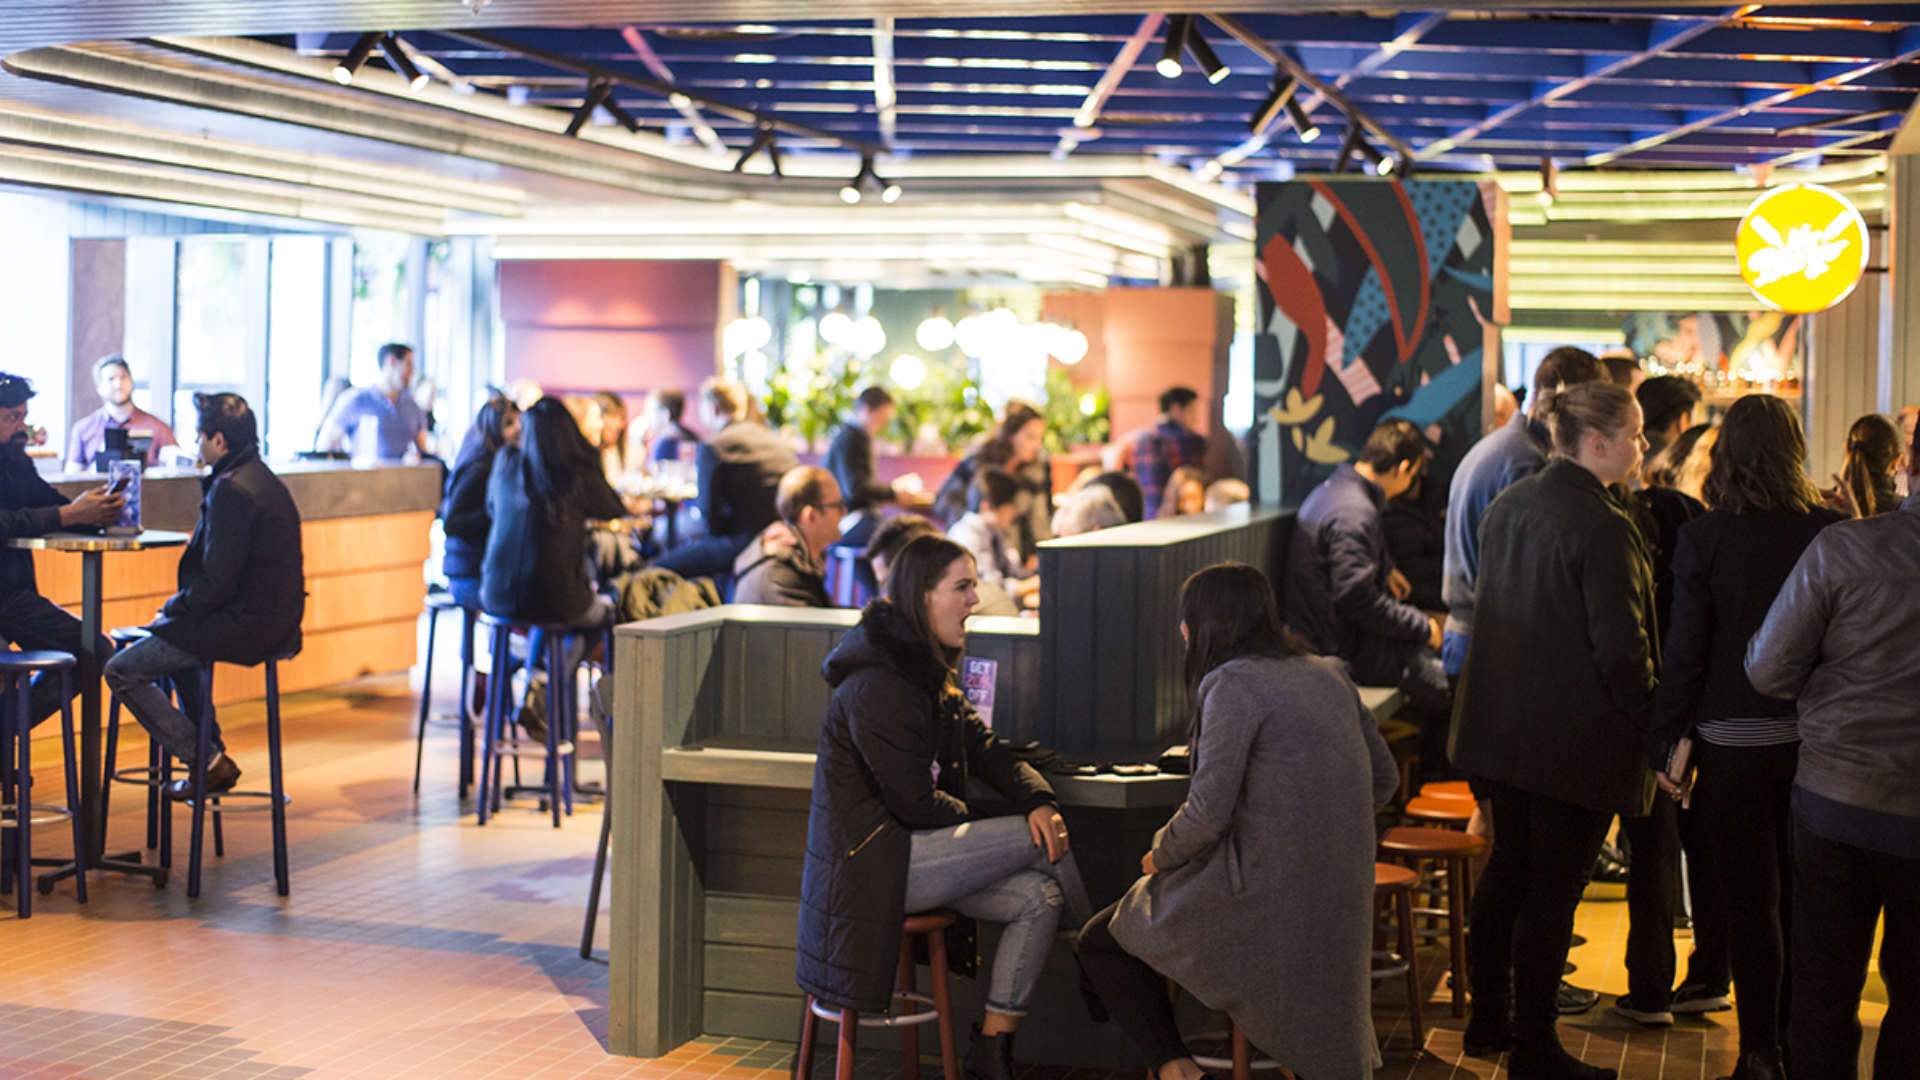 Melbourne's New Food Court-Like Bar Lets You Order Via App